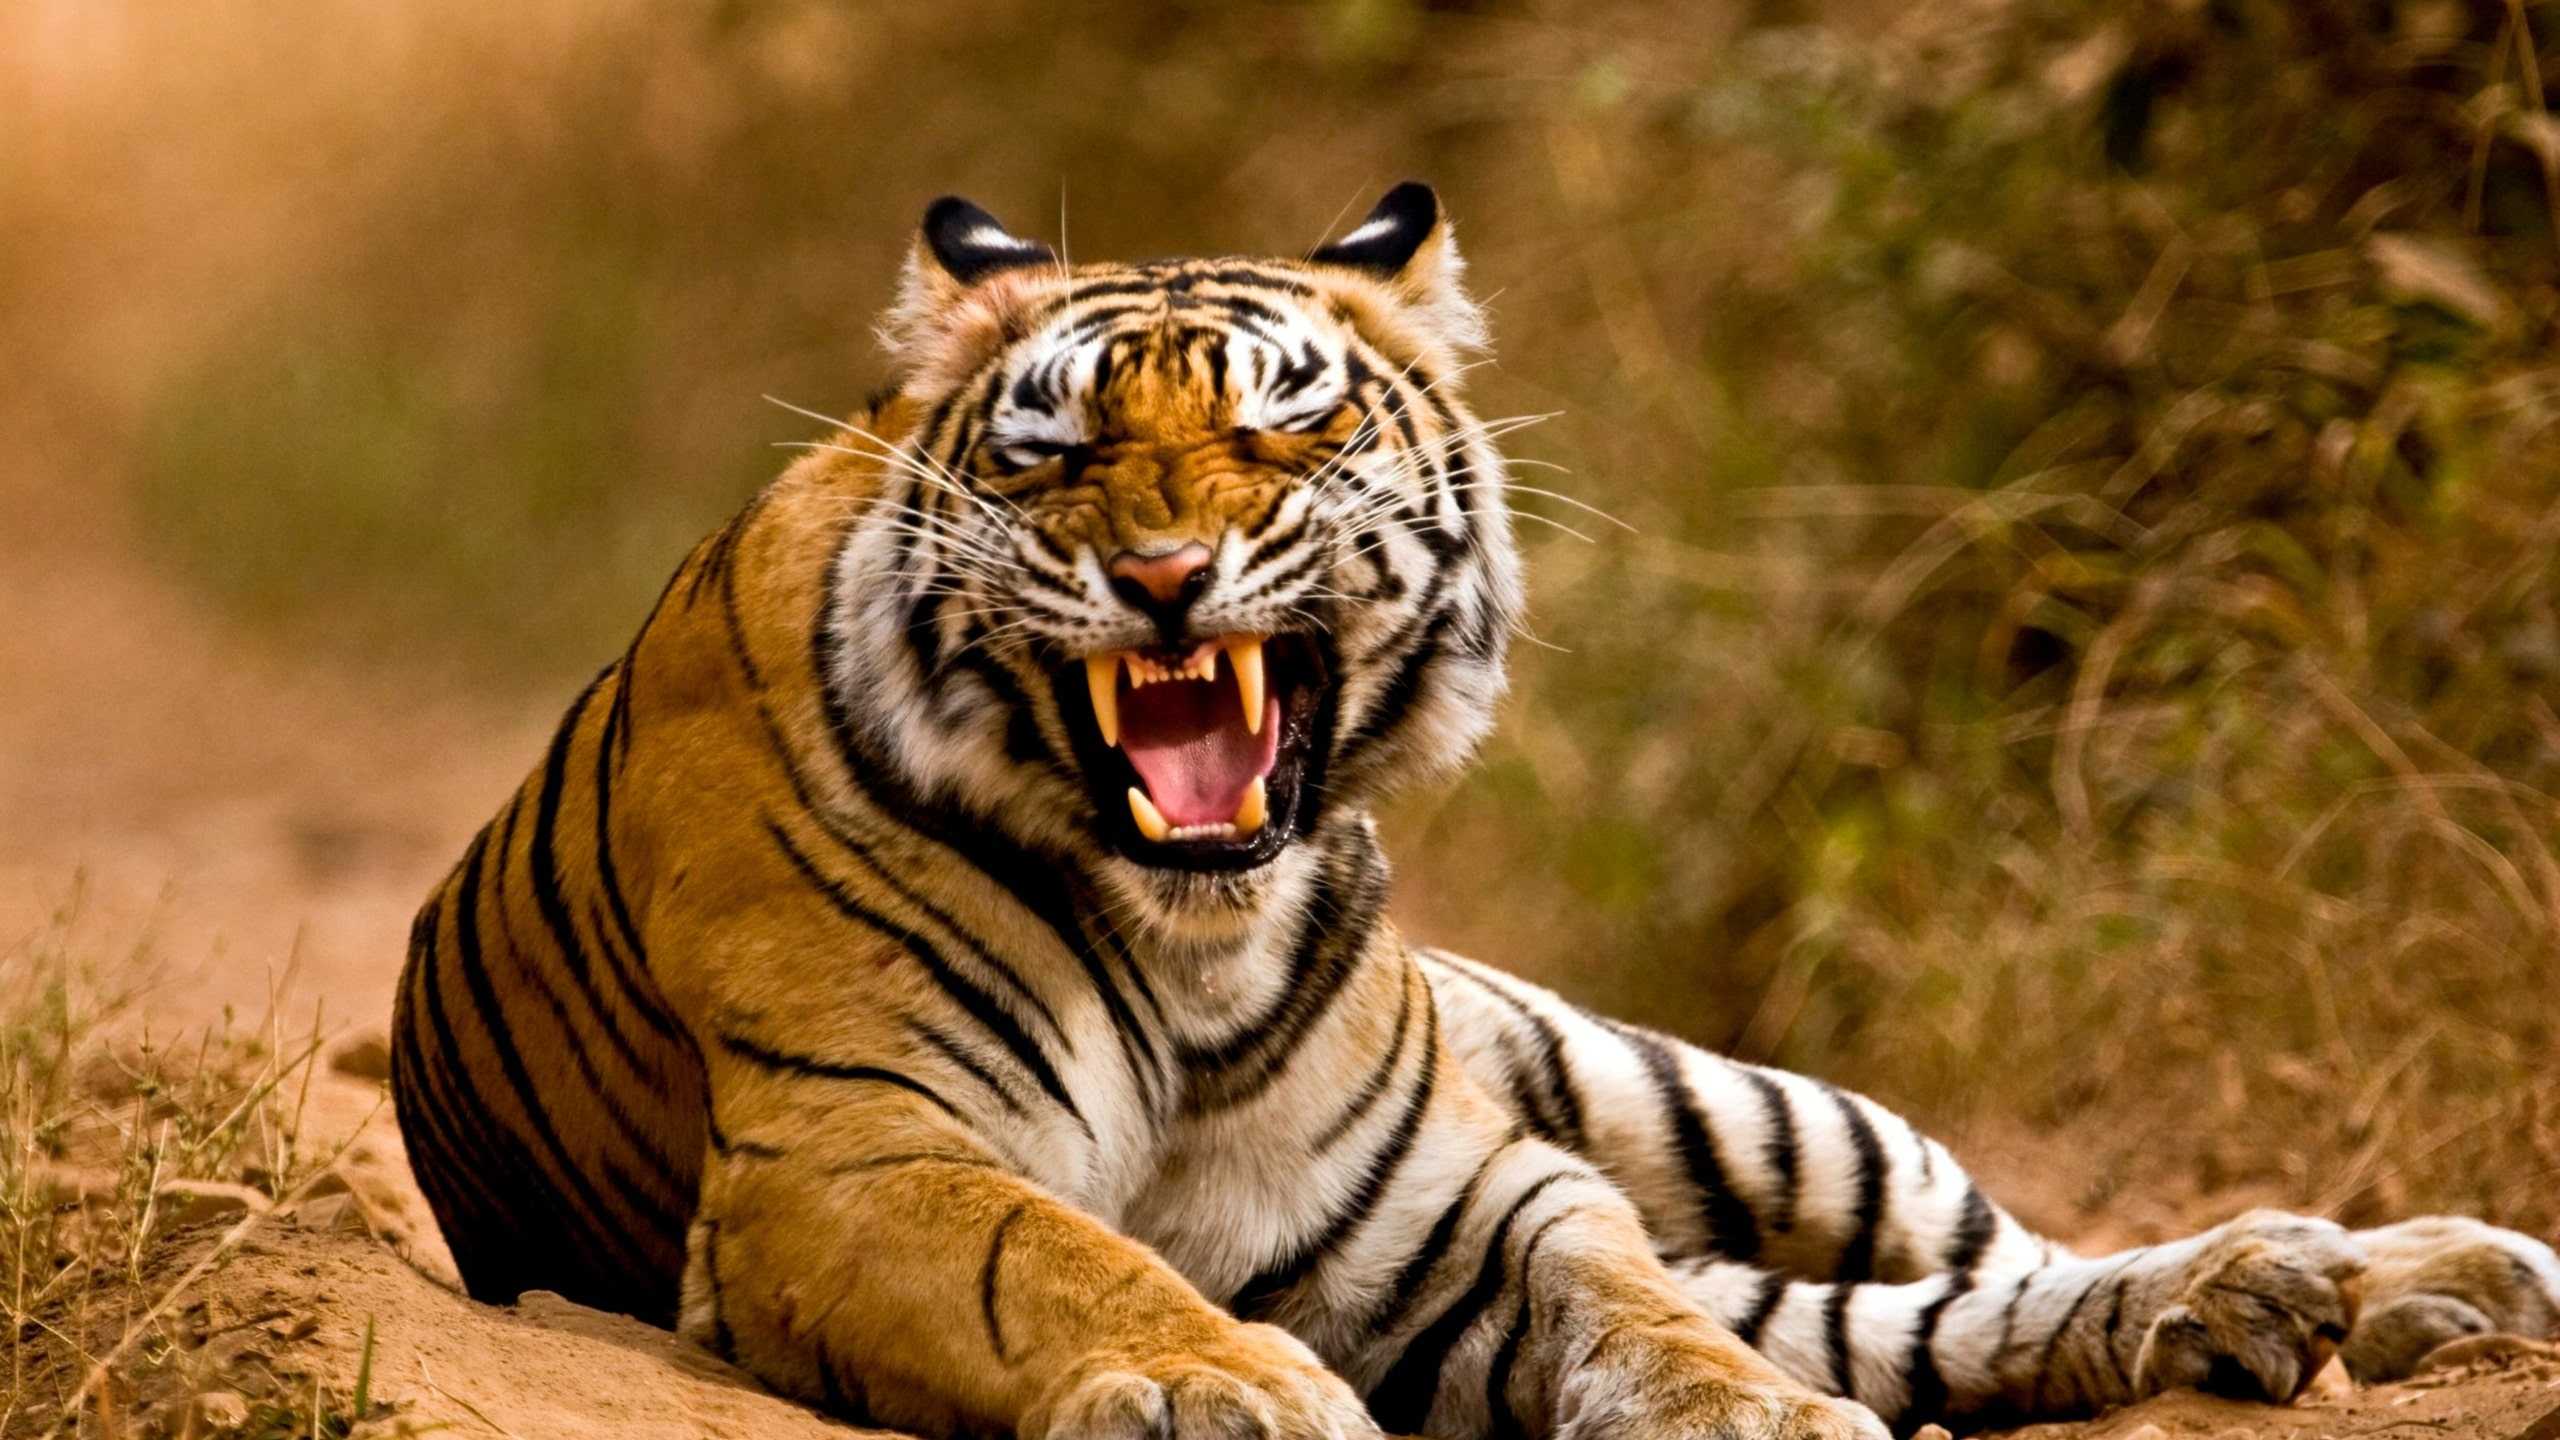 Tiger Roar Wallpaper .kolpaper.com